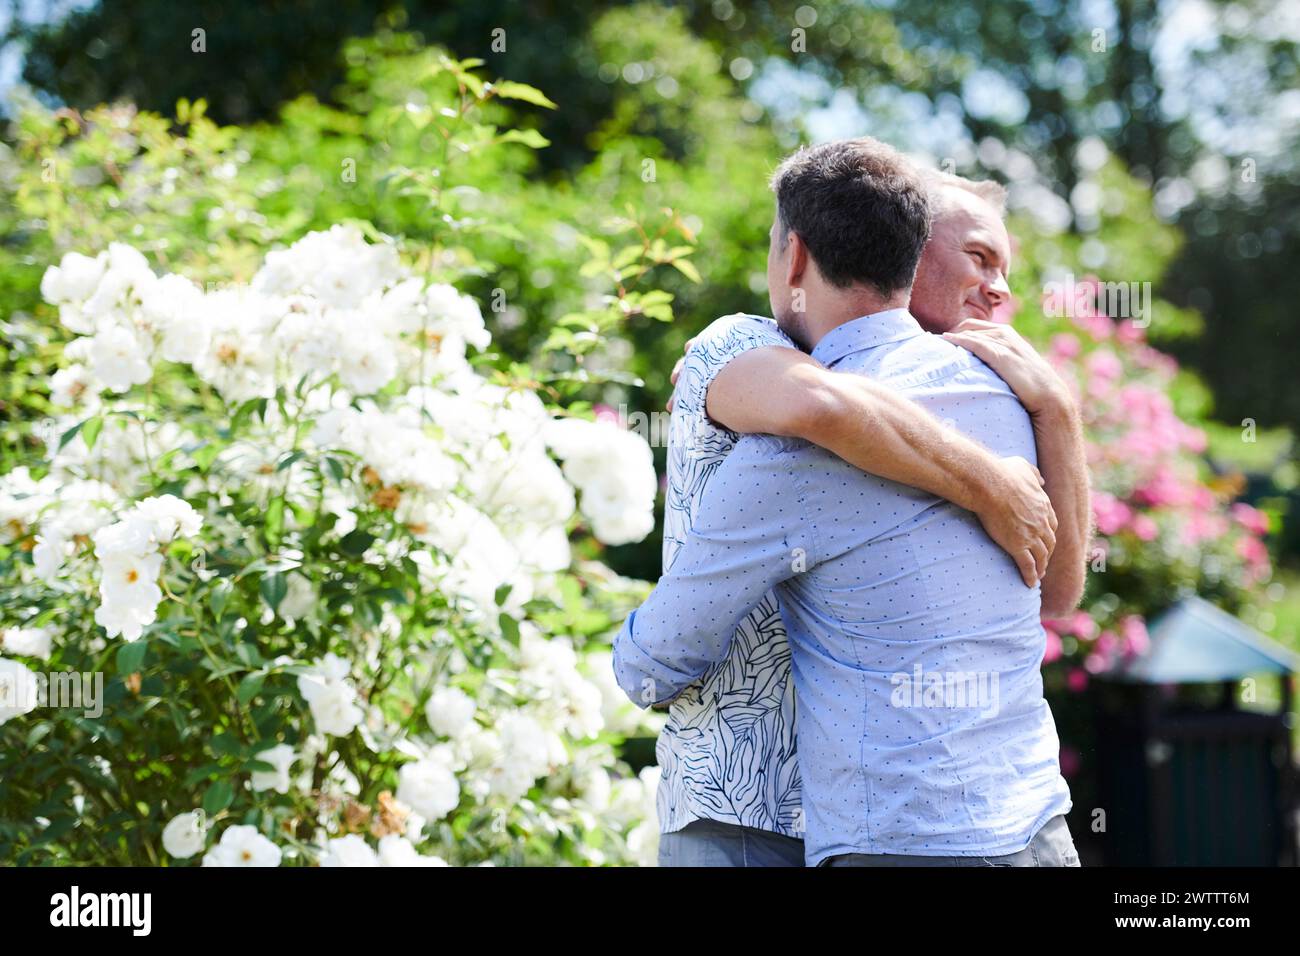 Deux hommes embrassant dans un jardin avec des fleurs blanches Banque D'Images